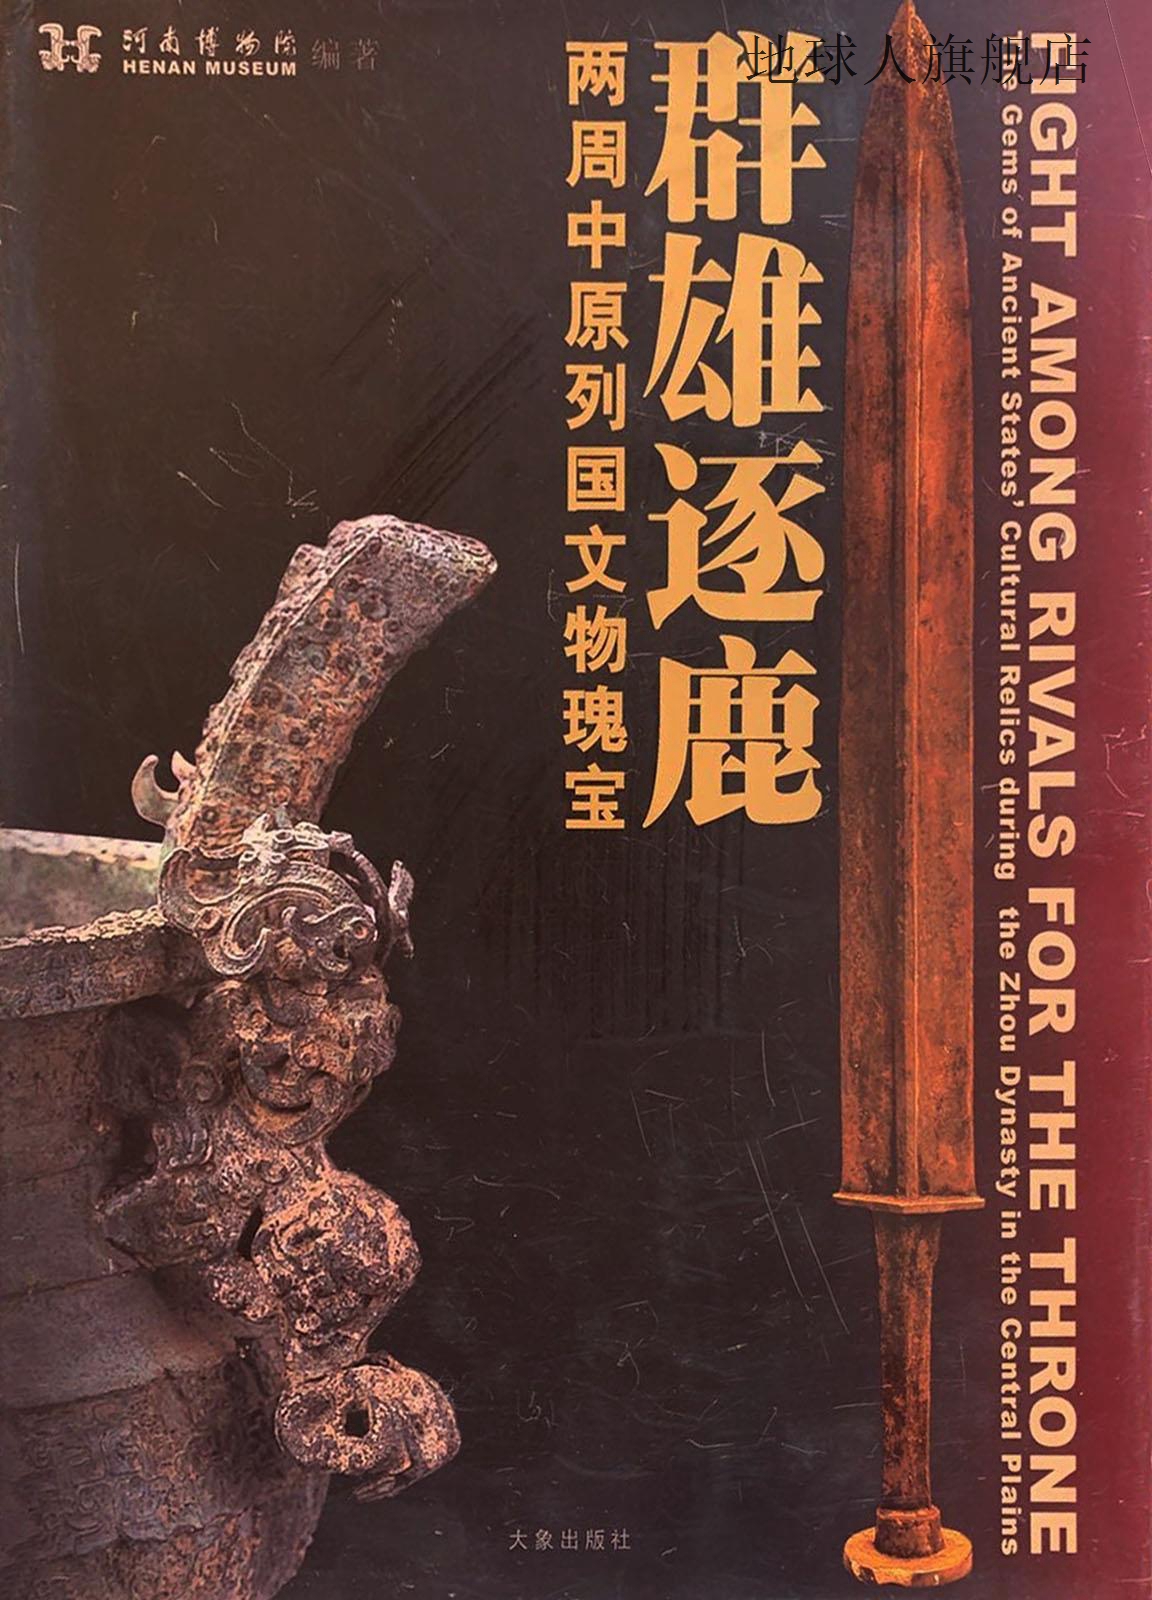 两周列国文物瑰宝,河南博物馆院等编,大象出版社,9787534730580